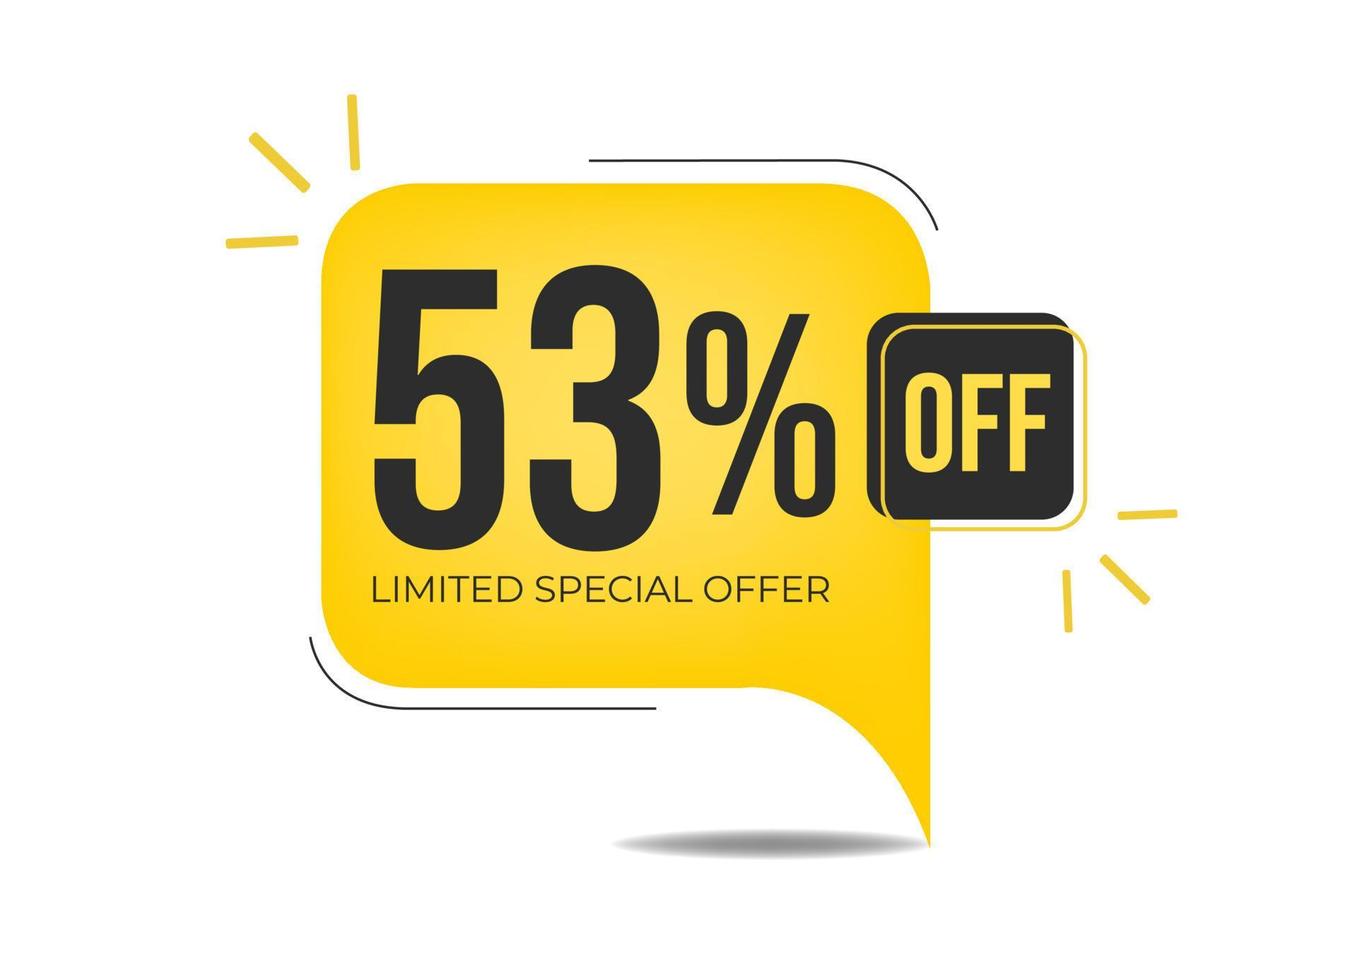 53 de descuento en oferta especial limitada. banner con cincuenta y tres por ciento de descuento en un globo amarillo. vector